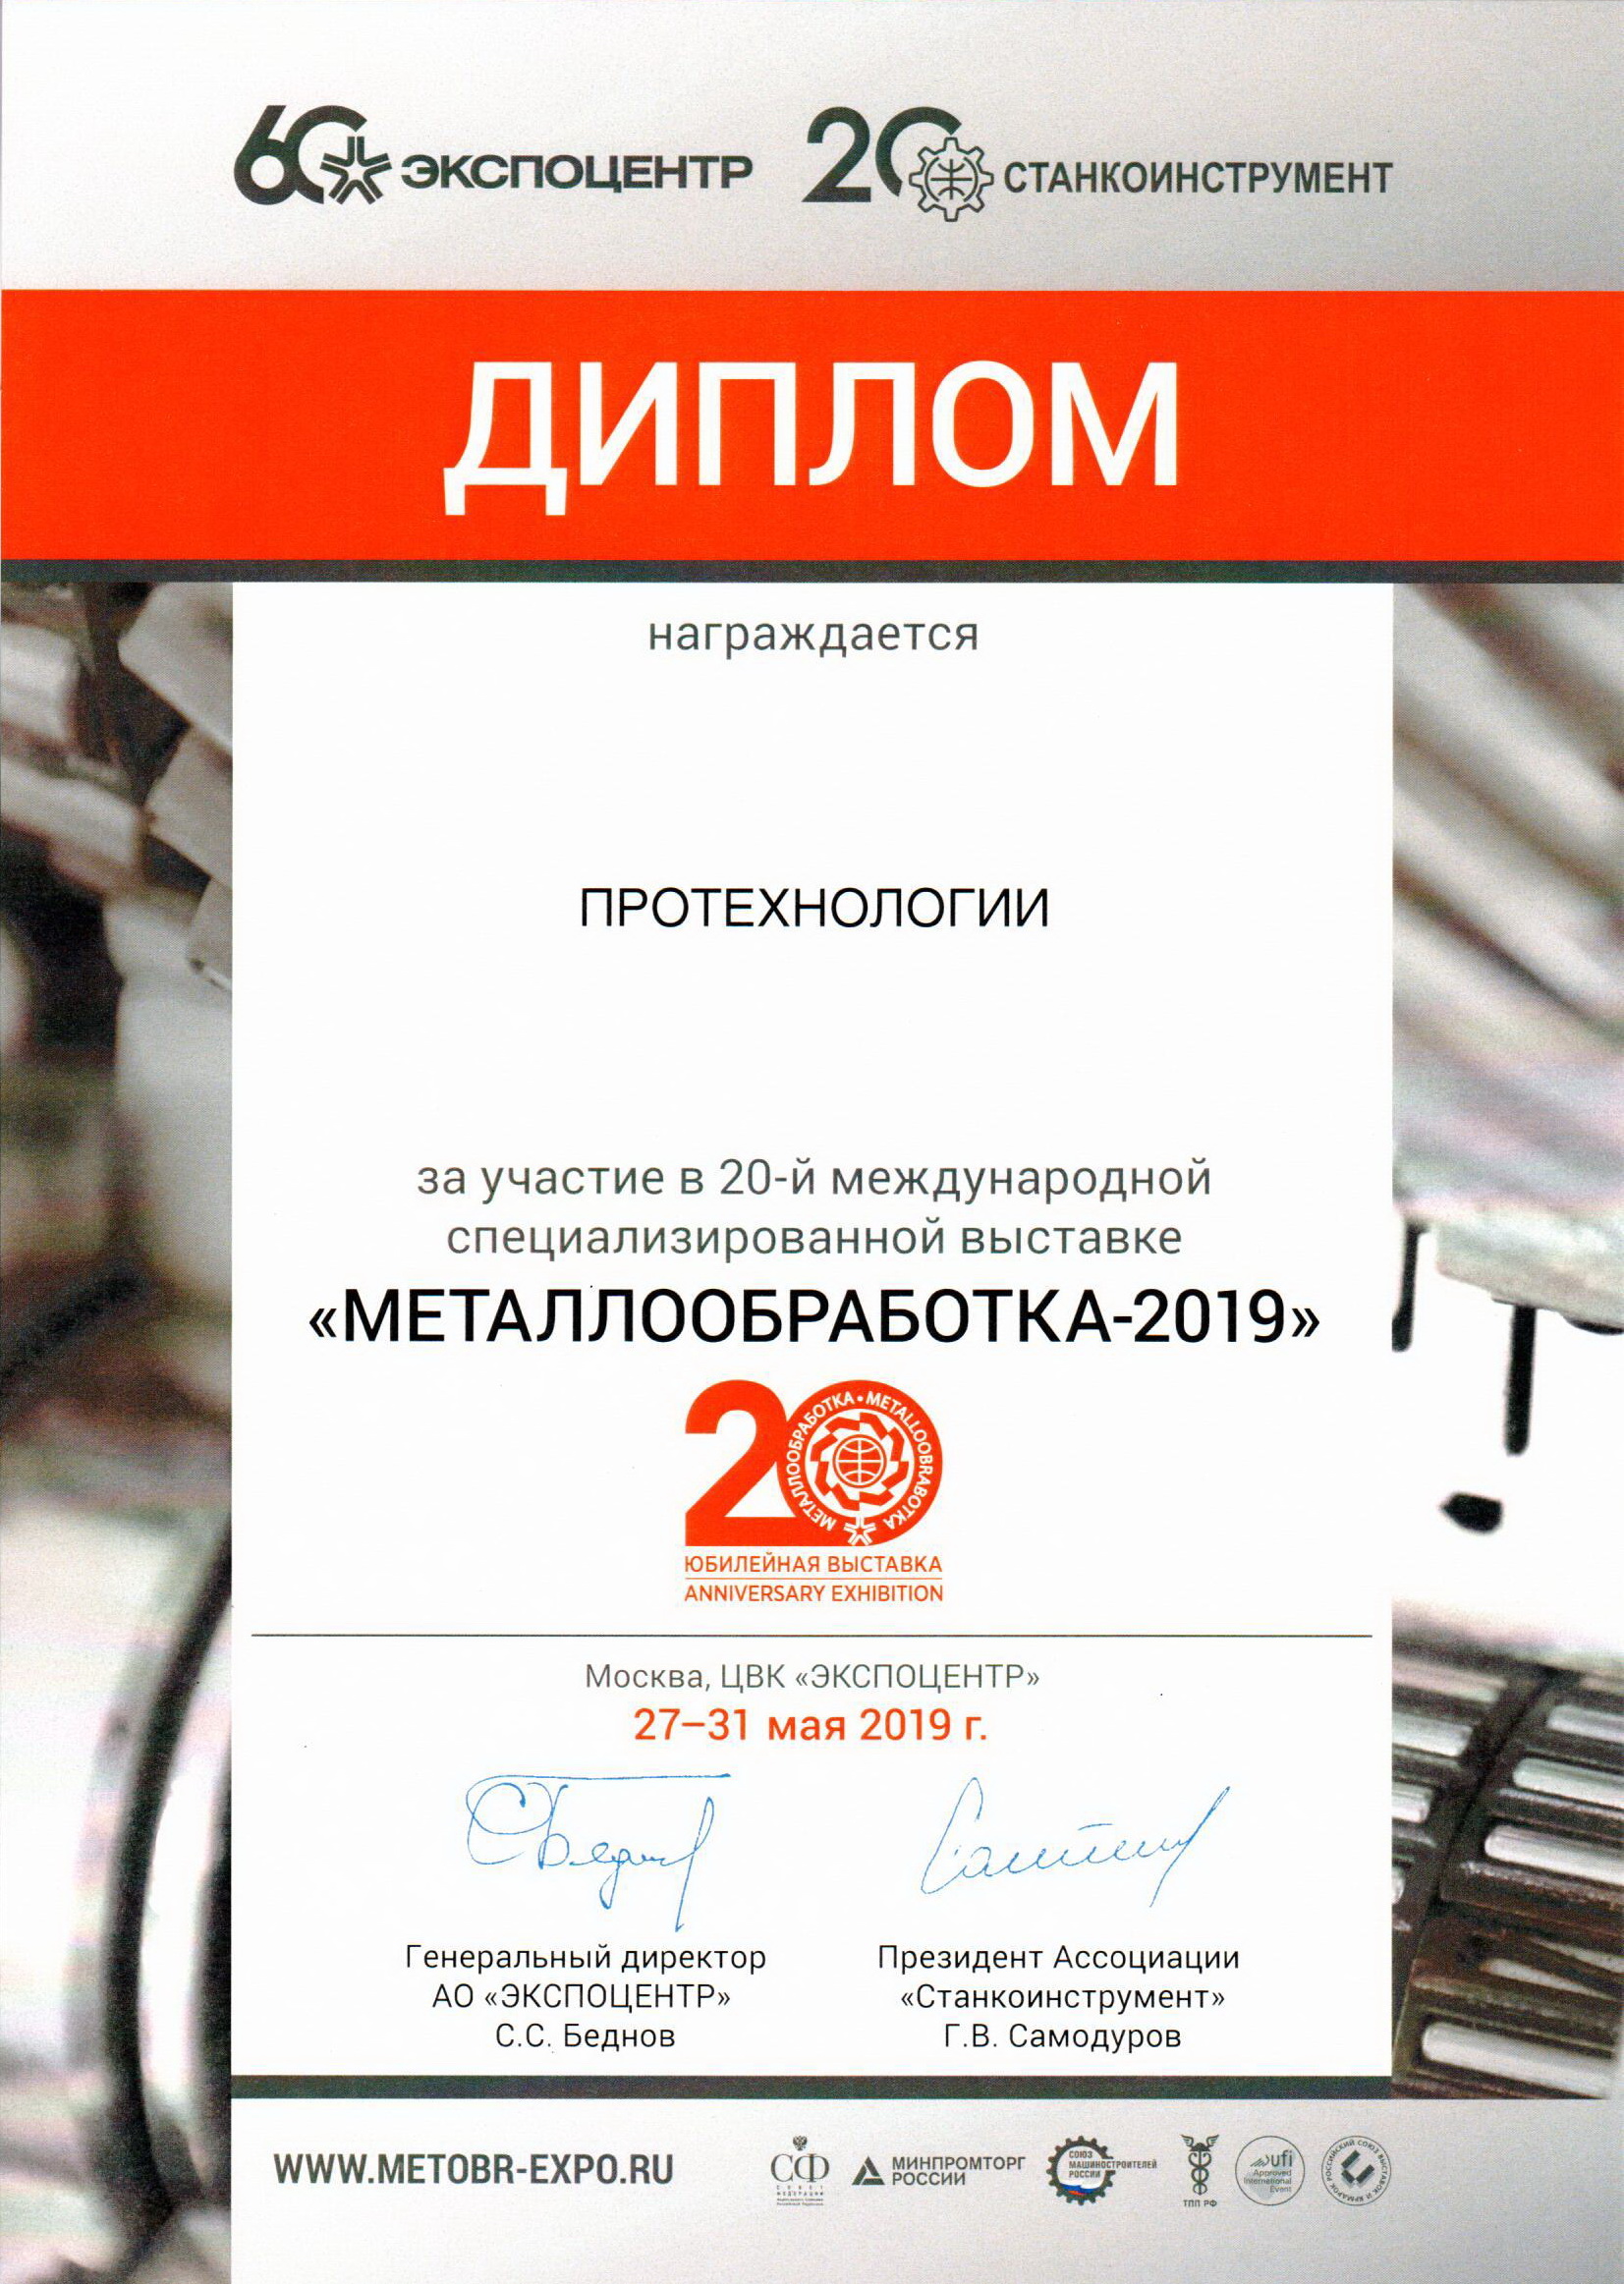 Завершилась выставка Металлообработка-2019